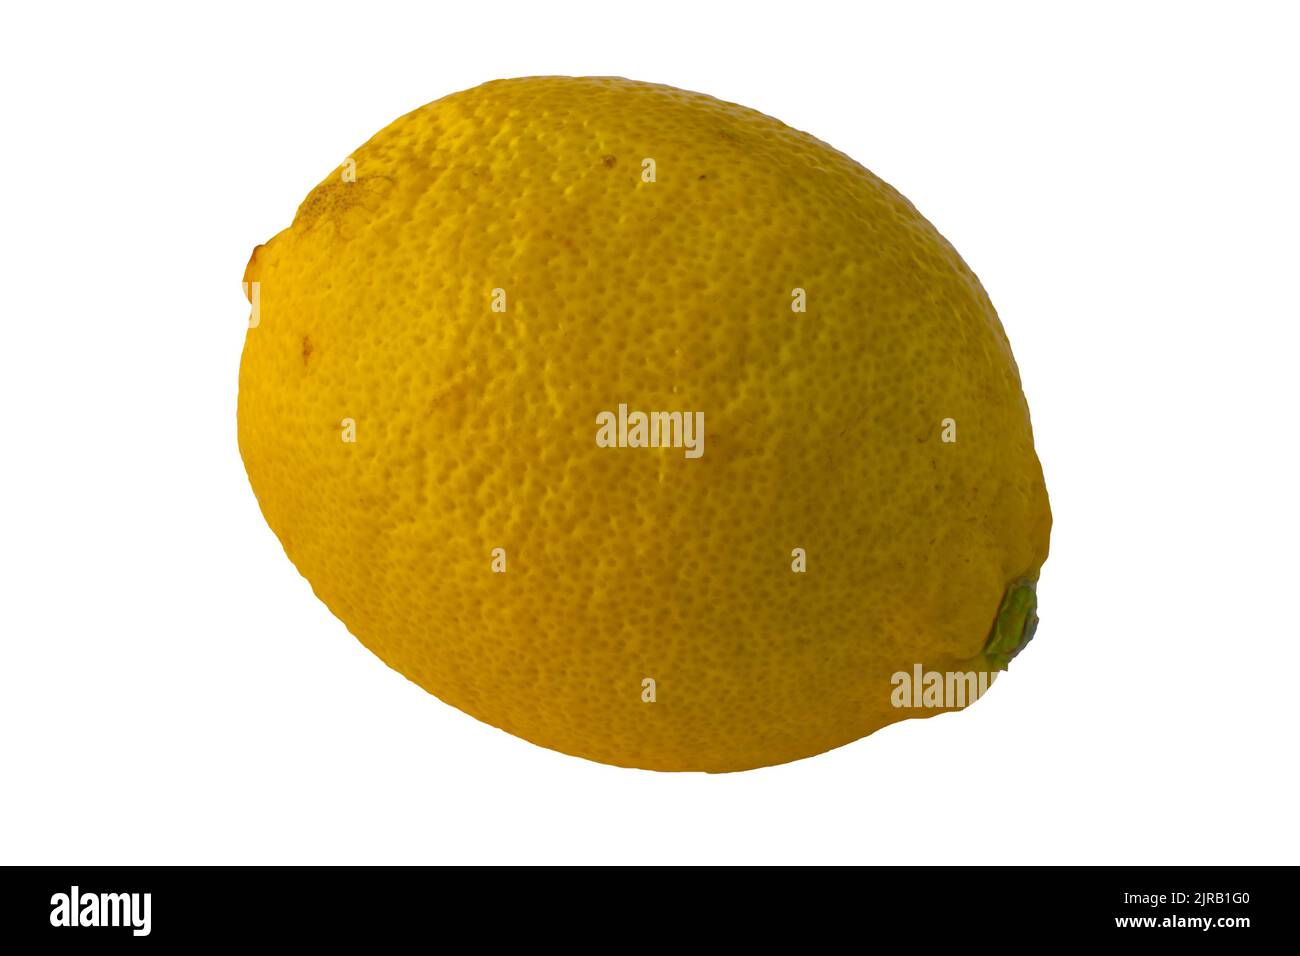 Whole lemon (Citrus limon rutaceae) isolated on white background Stock Photo